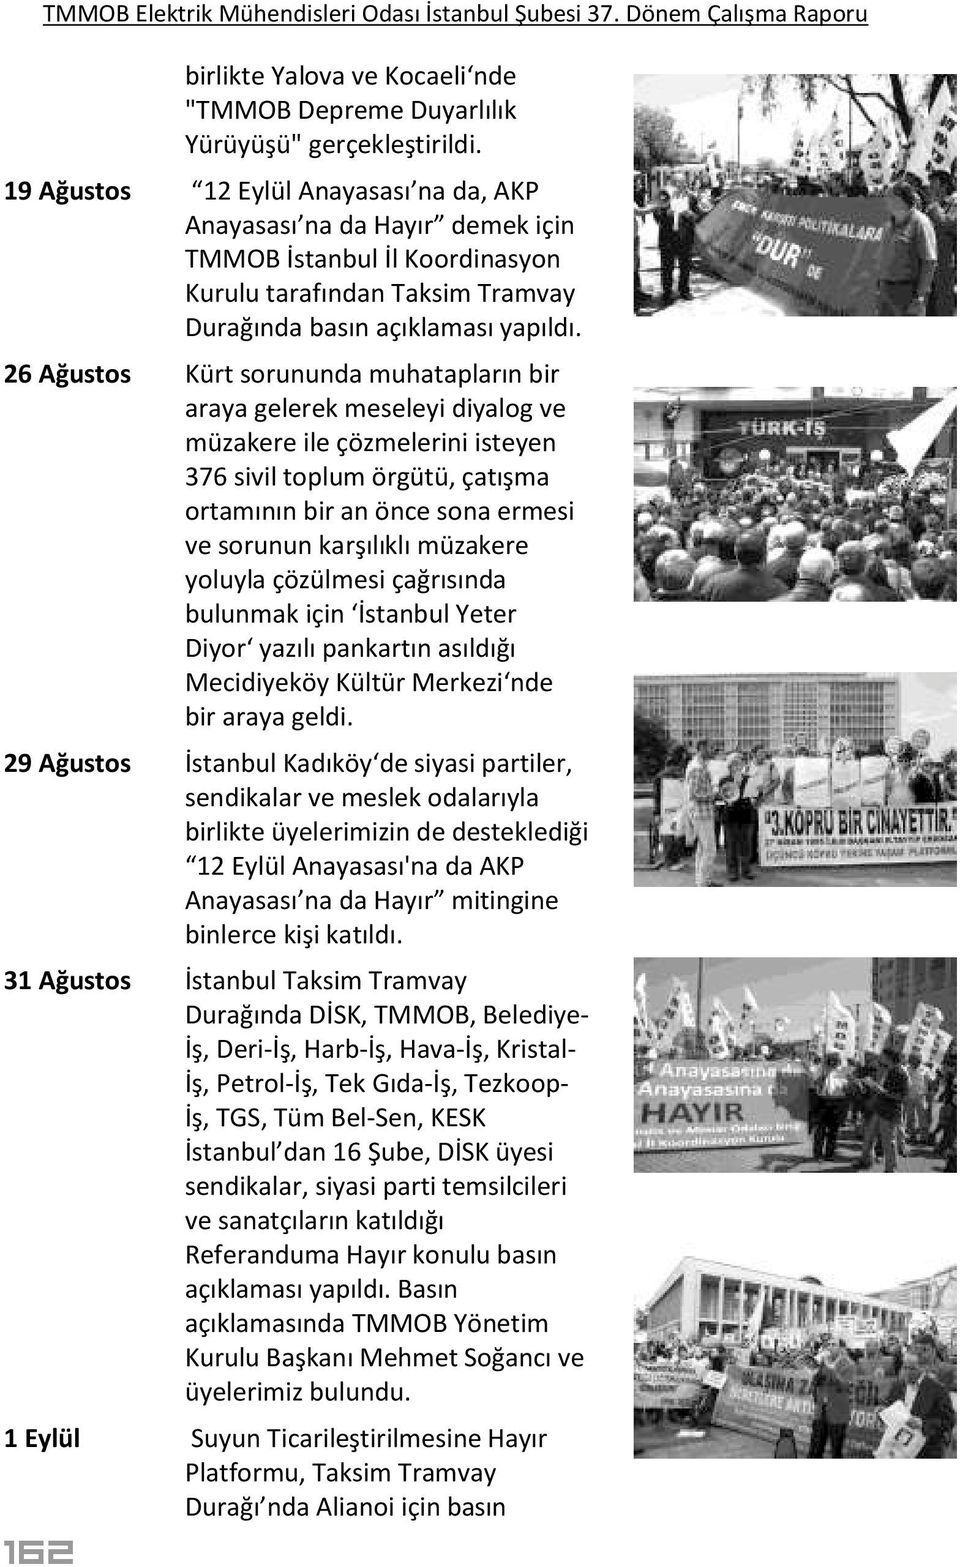 26 Ağustos Kürt sorununda muhatapların bir araya gelerek meseleyi diyalog ve müzakere ile çözmelerini isteyen 376 sivil toplum örgütü, çatışma ortamının bir an önce sona ermesi ve sorunun karşılıklı